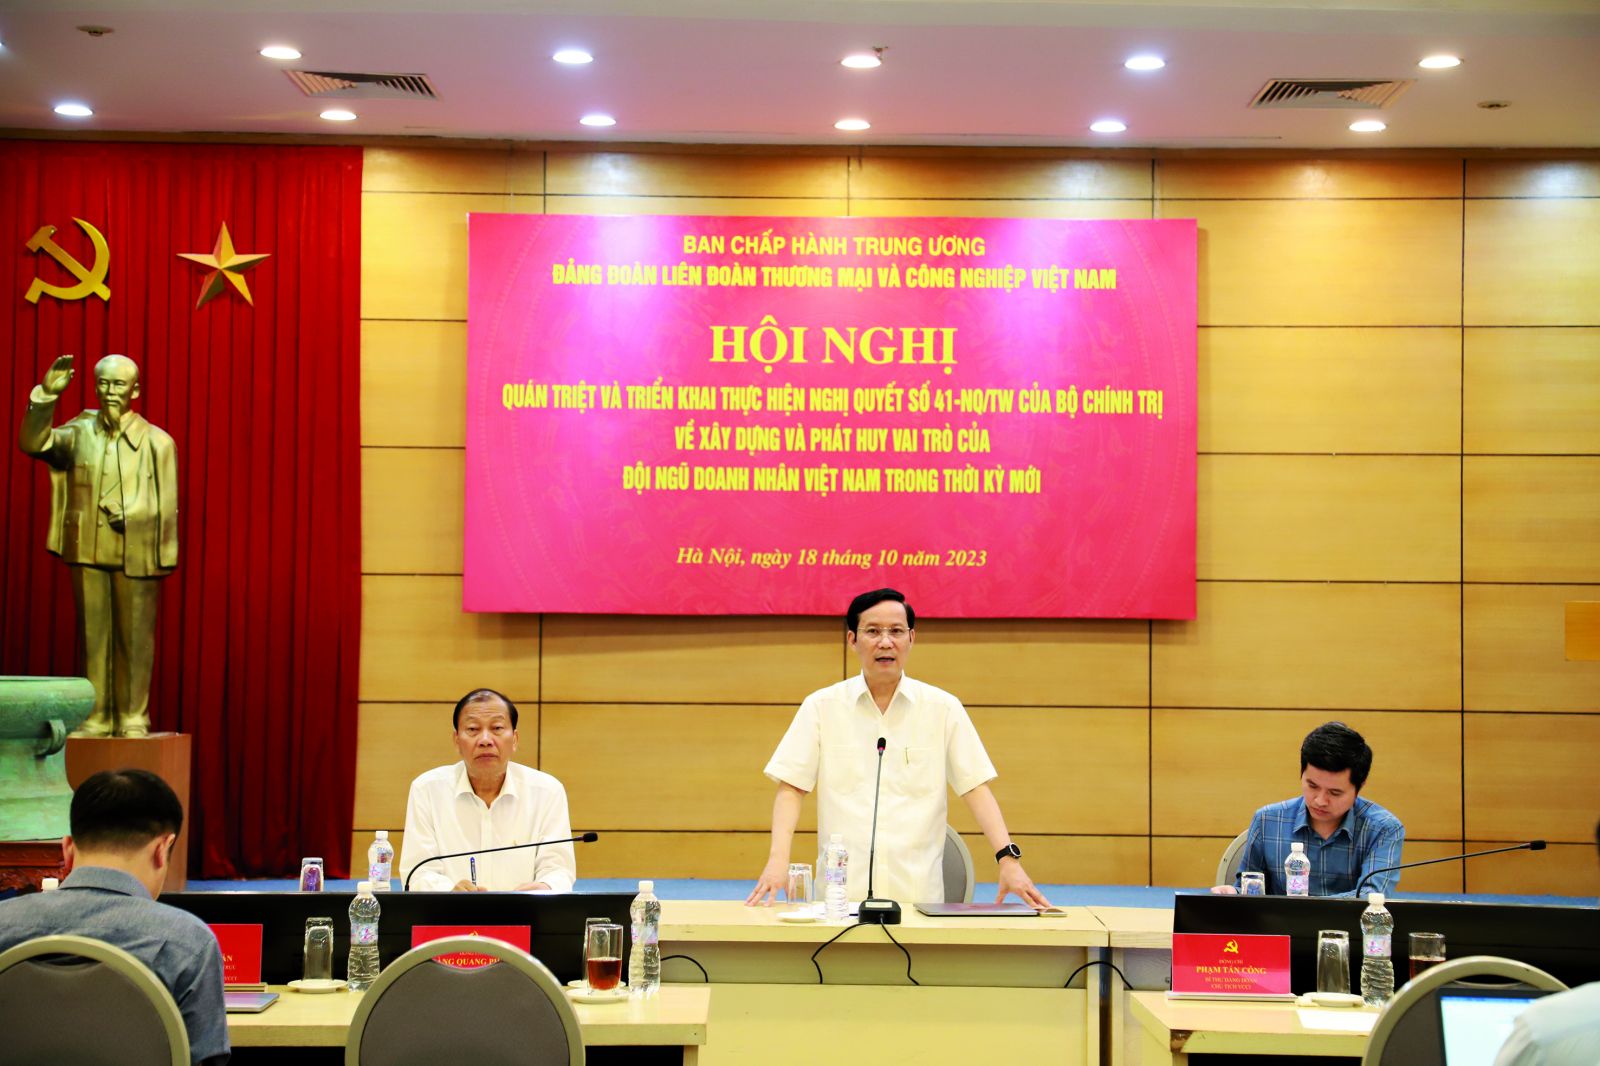  Chủ tịch VCCI Phạm Tấn Công phát biểu tại Hội nghị quán triệt và triển khai thực hiện Nghị quyết 41-NQ/TW của Bộ Chính trị về xây dựng và phát huy vai trò của đội ngũ doanh nhân Việt Nam trong thời kỳ mới.